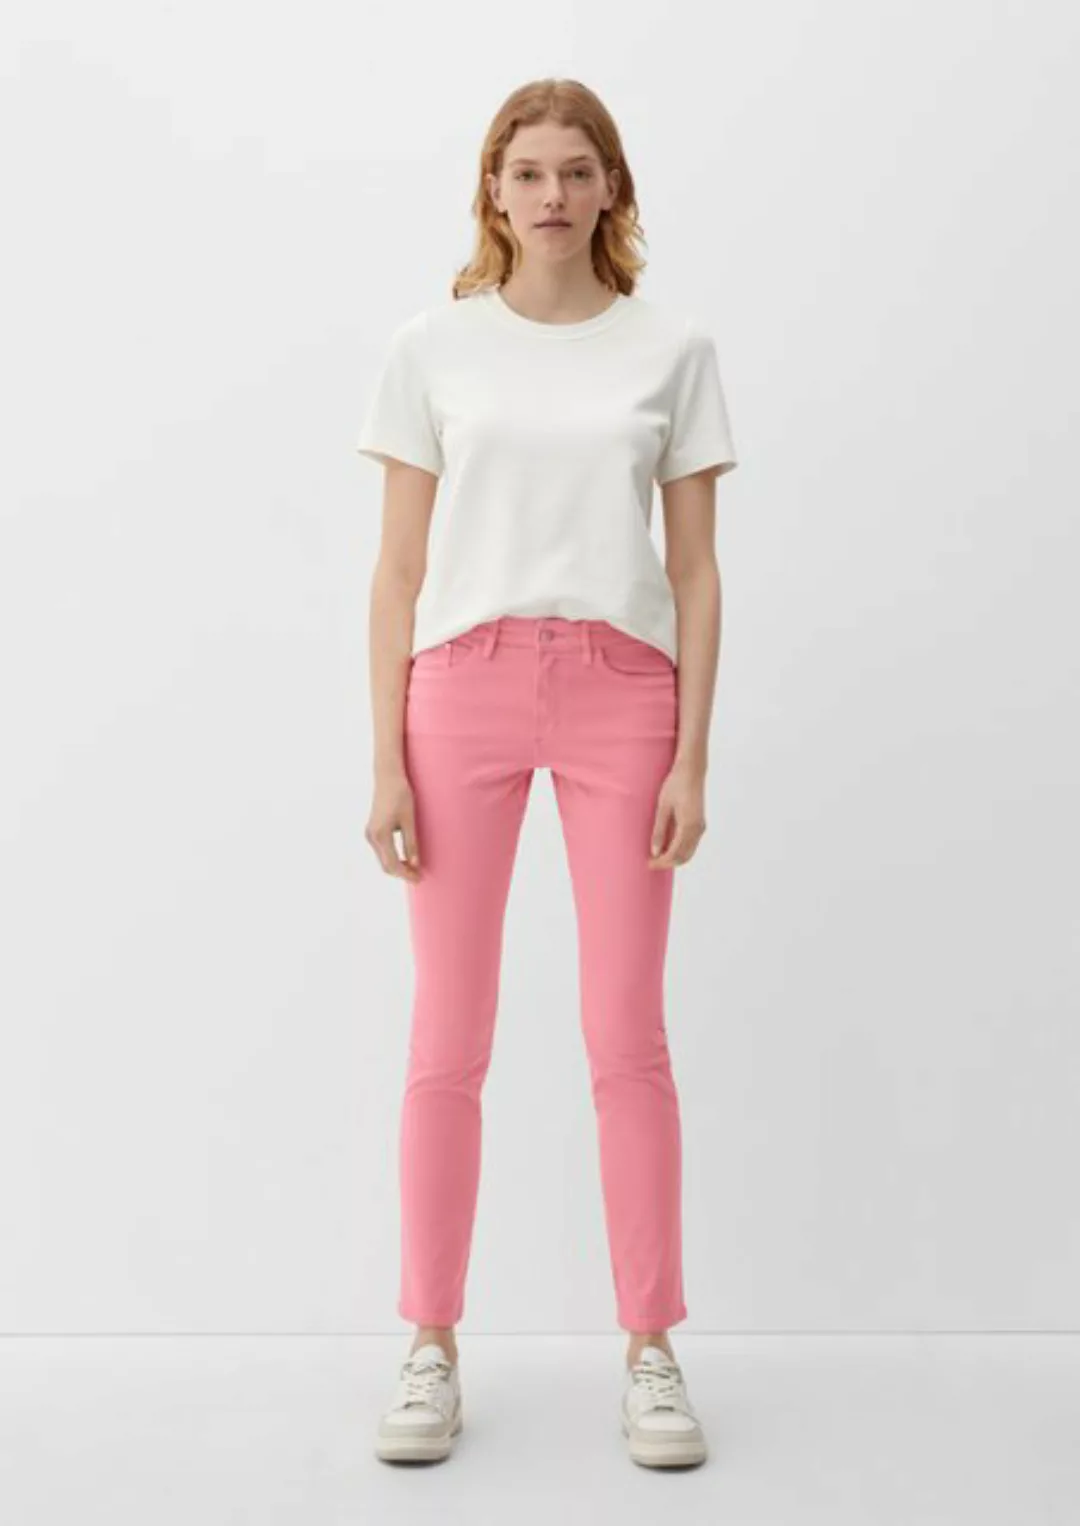 s.Oliver 5-Pocket-Jeans Jeans Betsy / Slim Fit / Mid Rise / Slim Leg Leder- günstig online kaufen